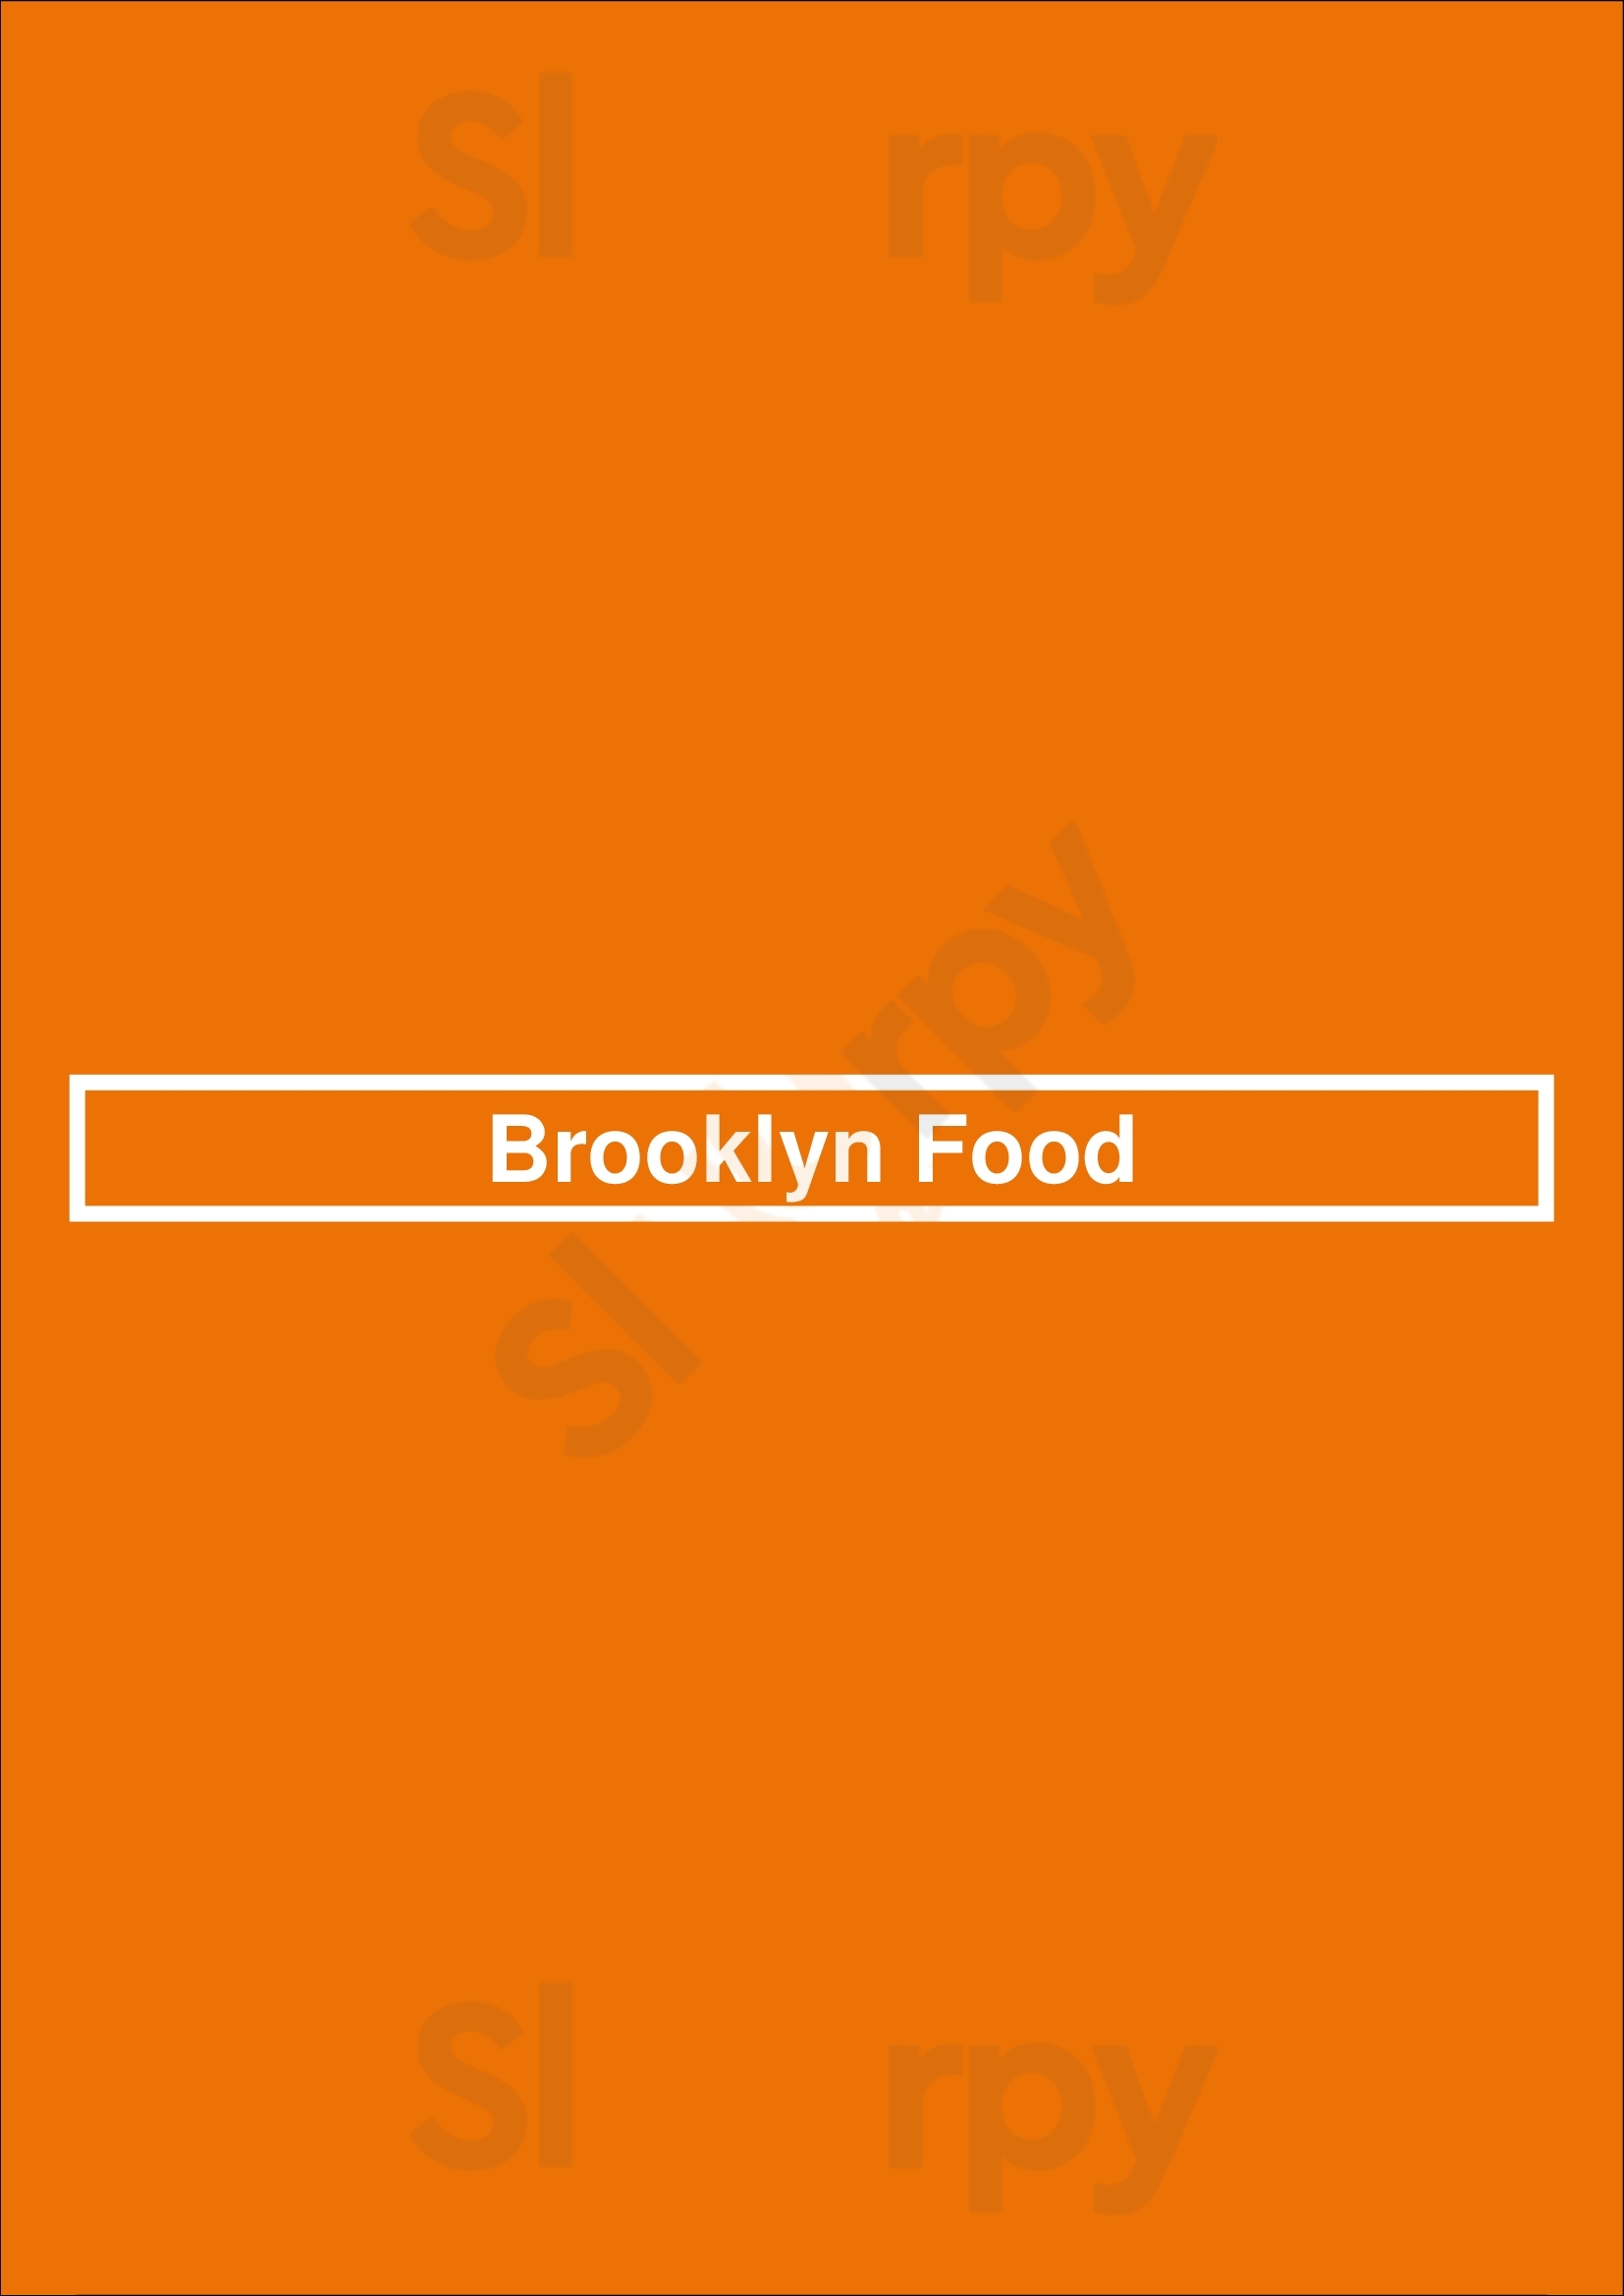 Brooklyn Food Laken Menu - 1